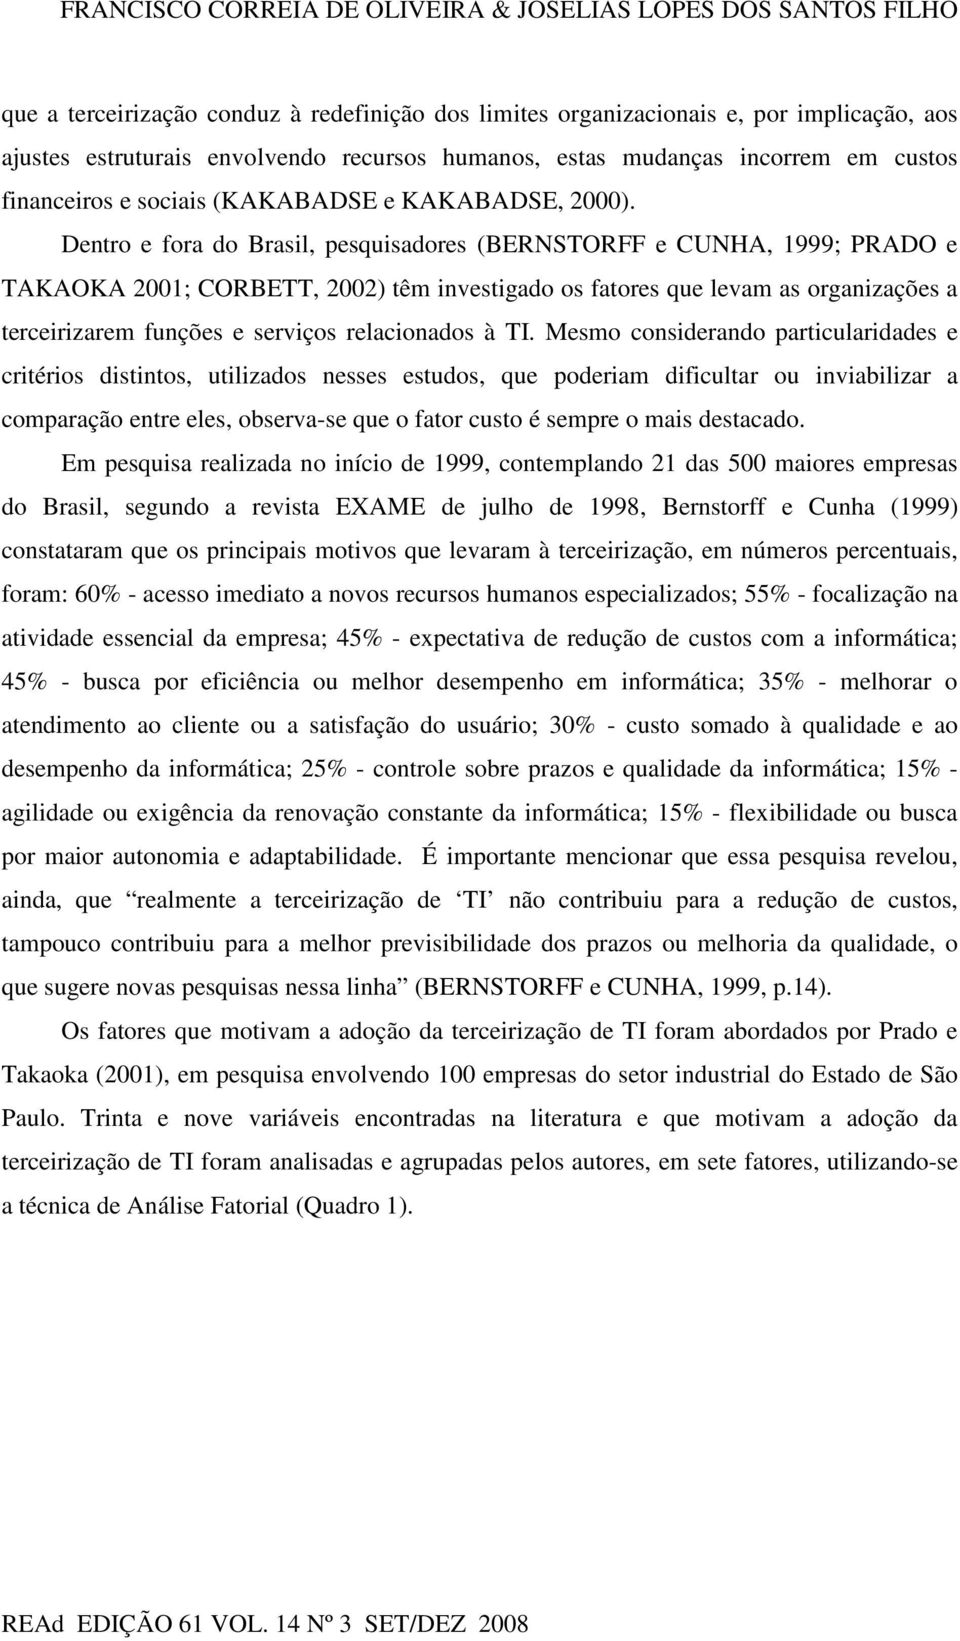 Dentro e fora do Brasil, pesquisadores (BERNSTORFF e CUNHA, 1999; PRADO e TAKAOKA 2001; CORBETT, 2002) têm investigado os fatores que levam as organizações a terceirizarem funções e serviços